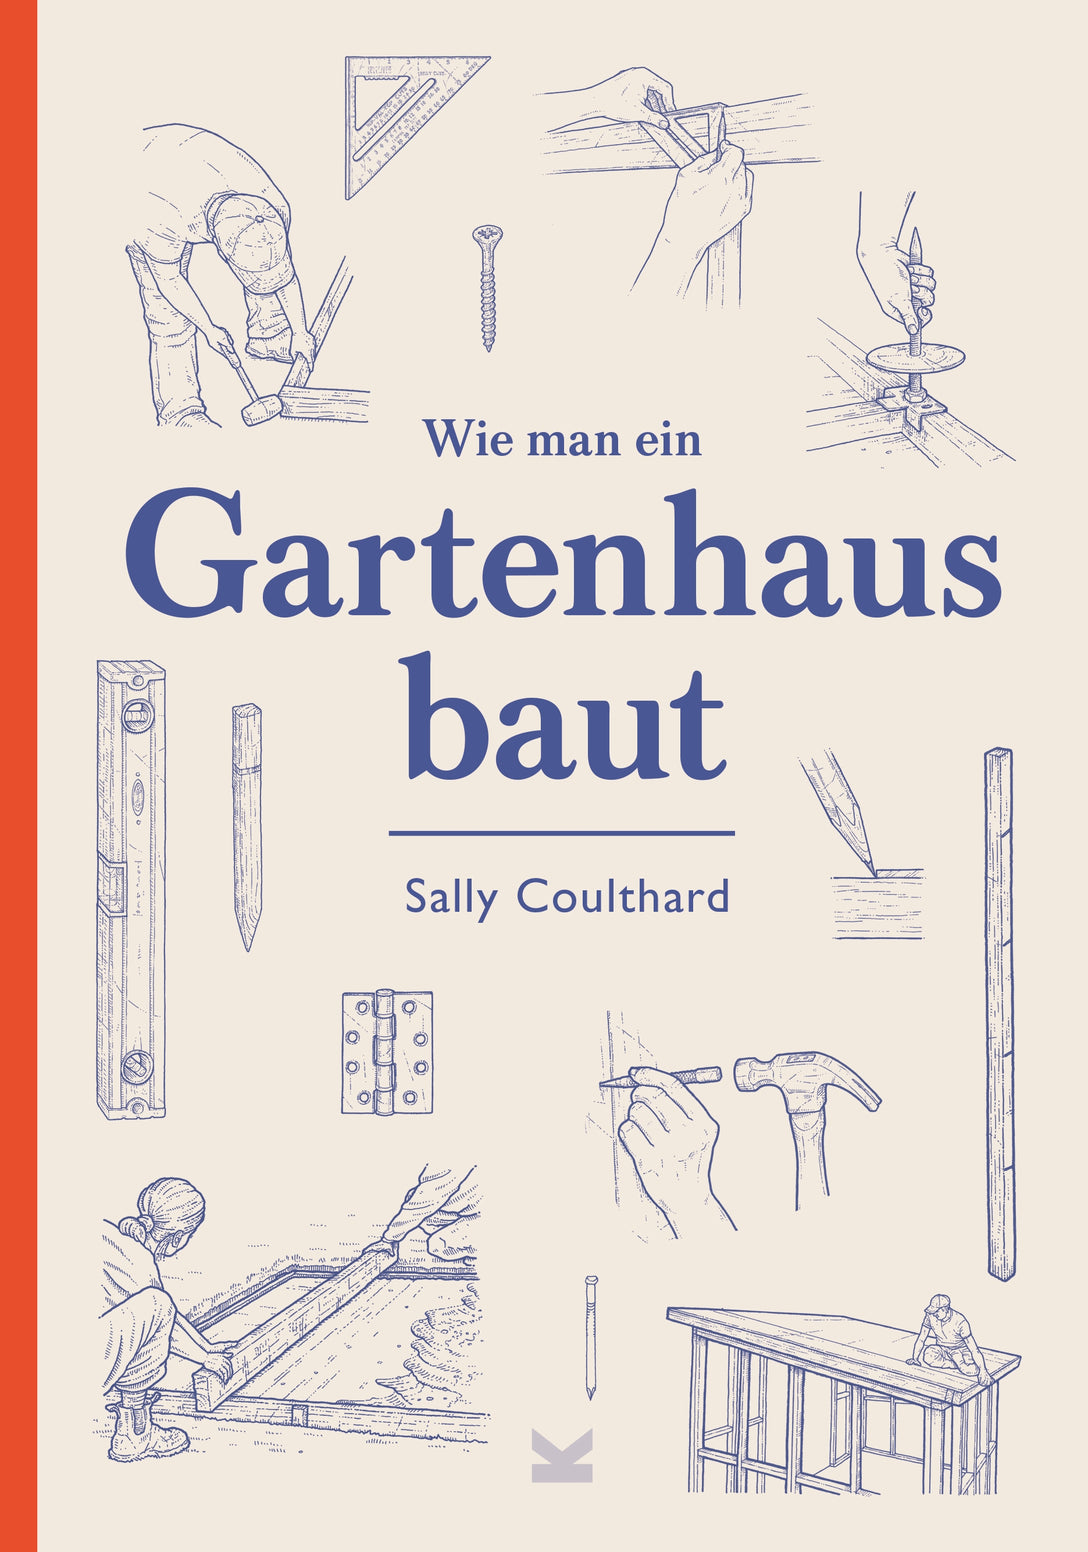 Wie man ein Gartenhaus baut by Lee John Phillips, Karola Bartsch; Ulrich Korn, Sally Coulthard